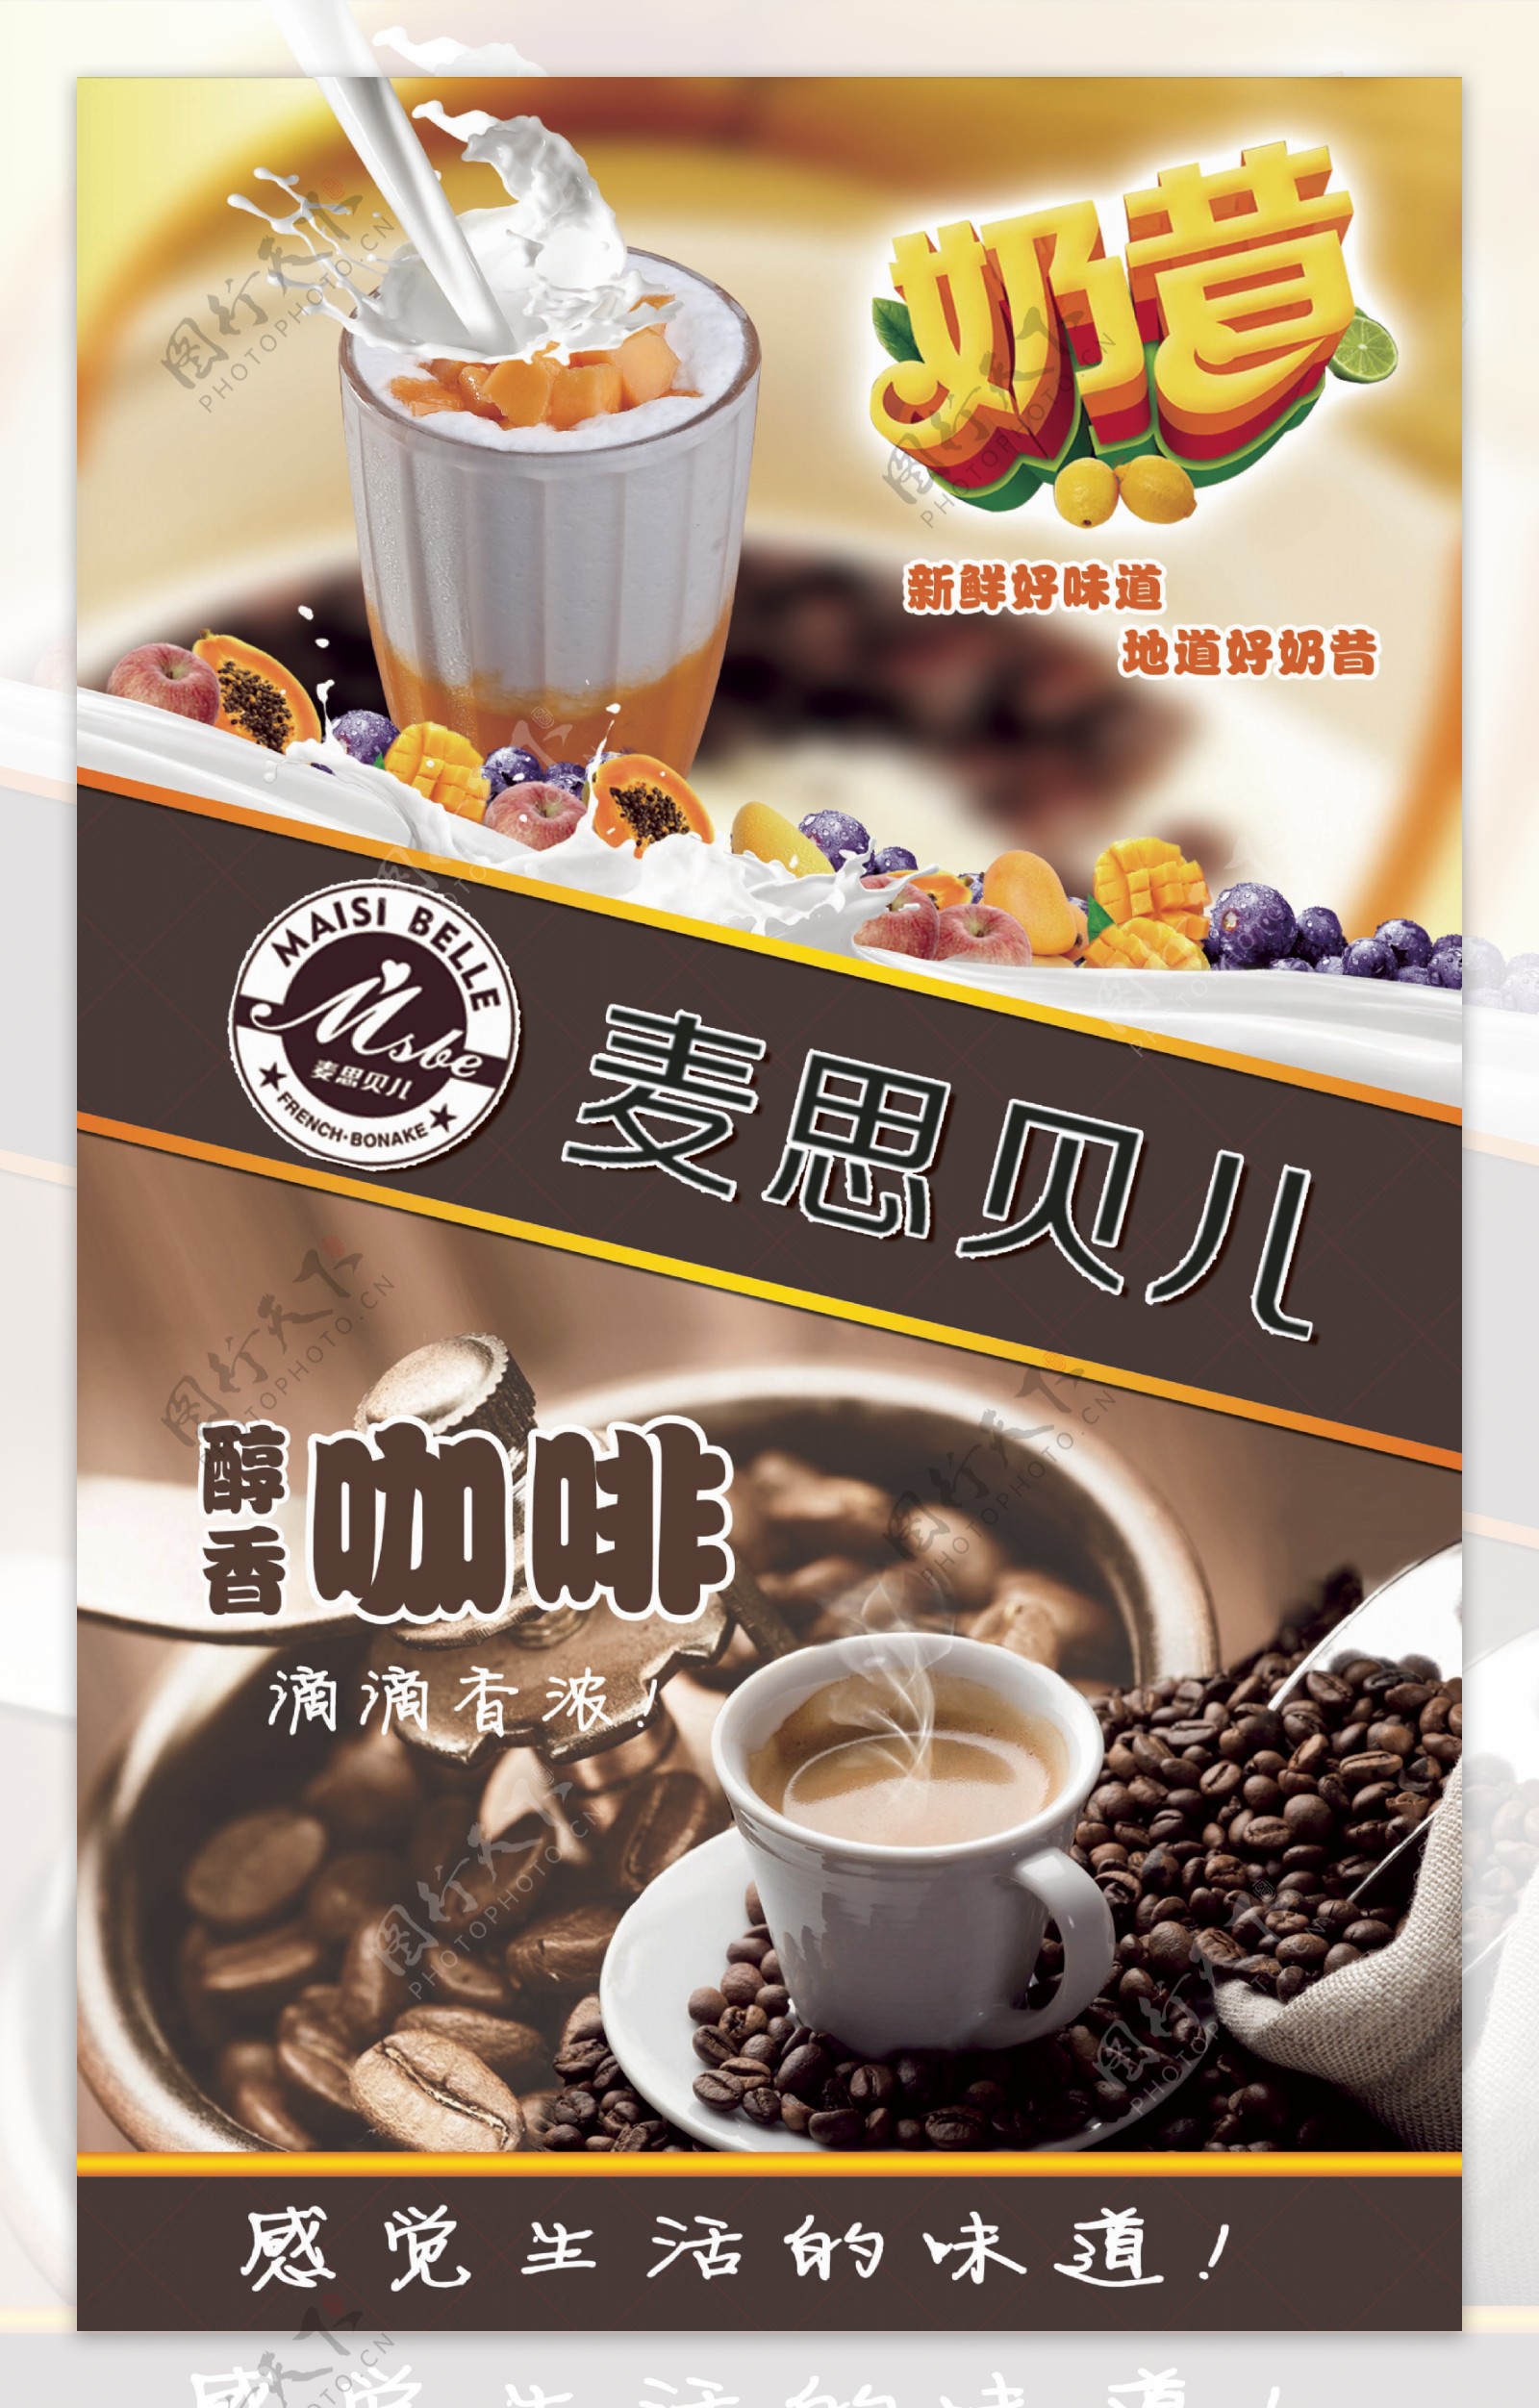 奶昔咖啡宣传海报设计psd素材下载